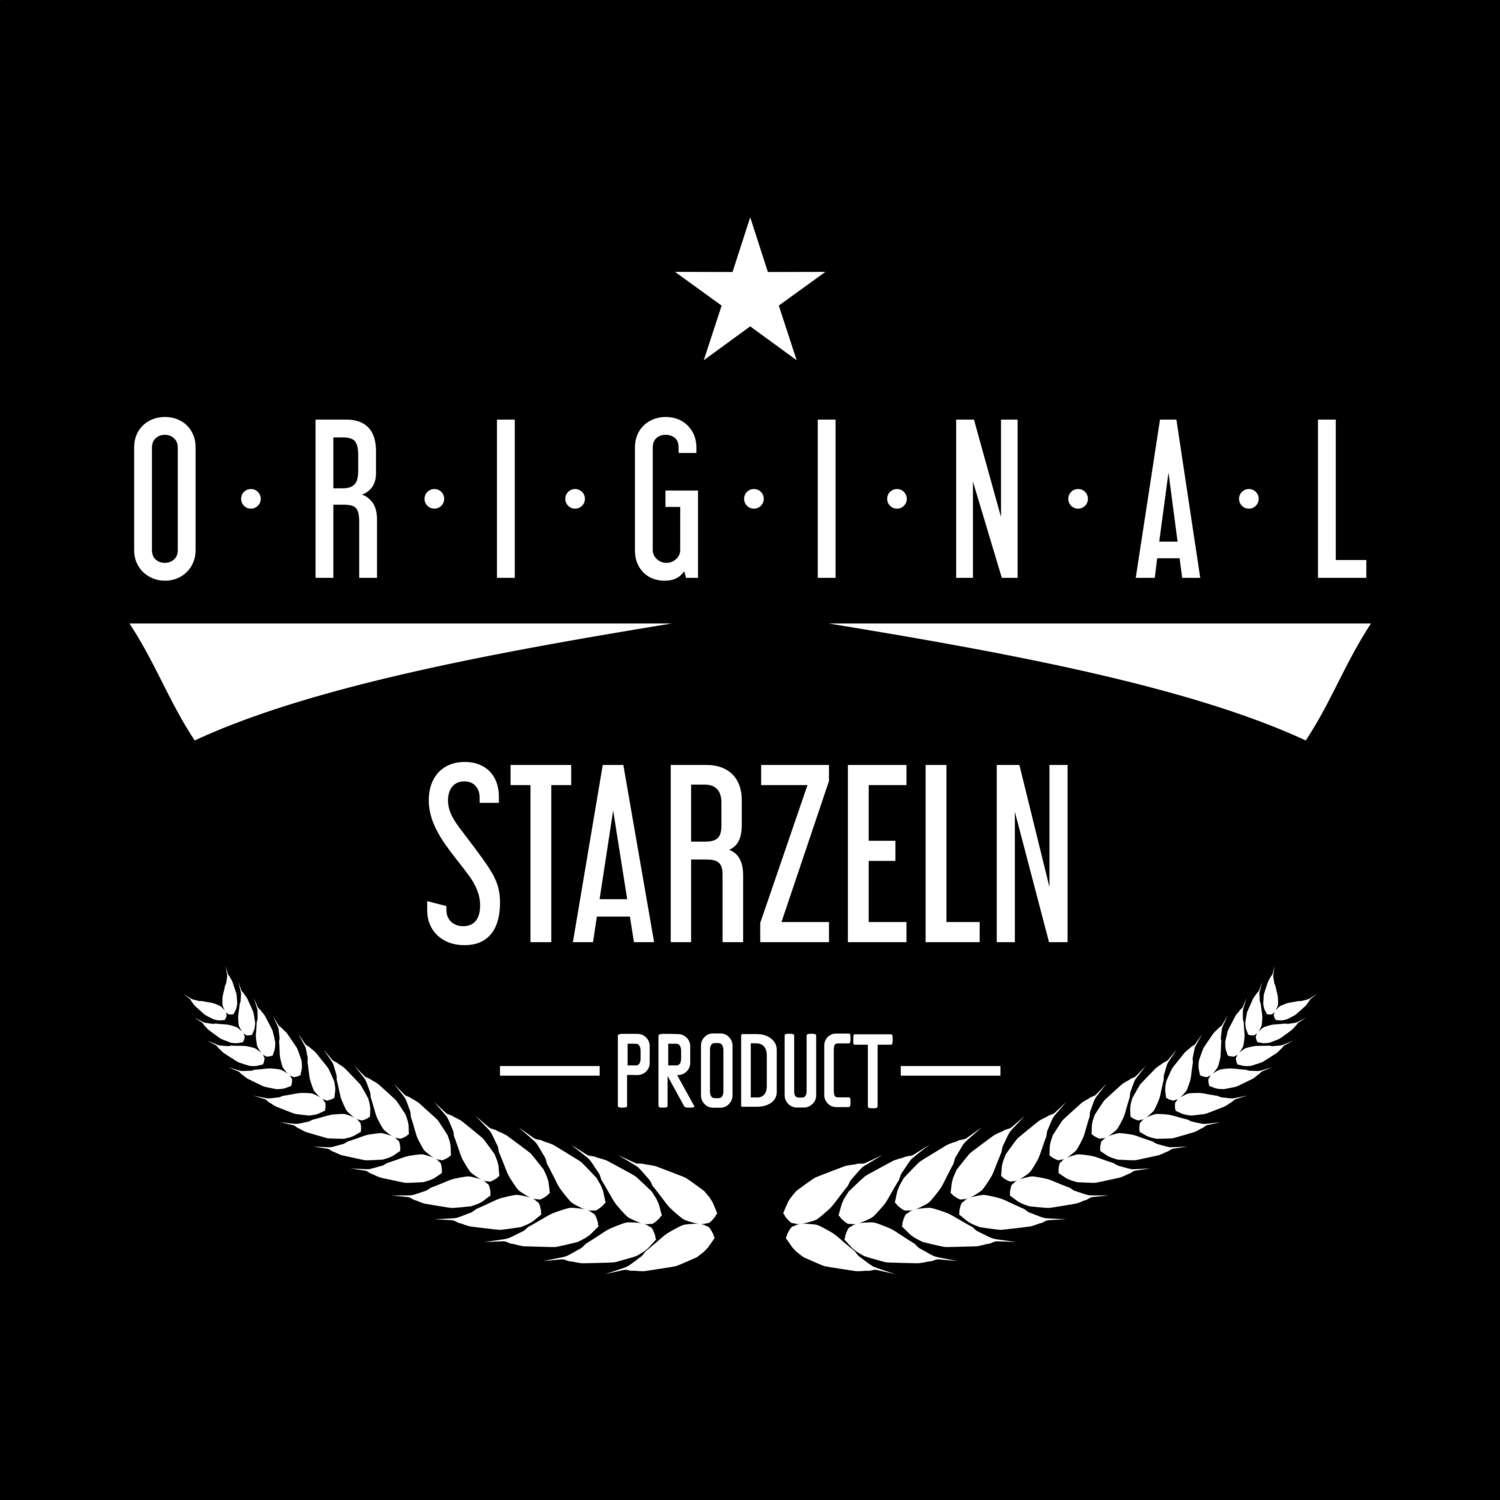 Starzeln T-Shirt »Original Product«